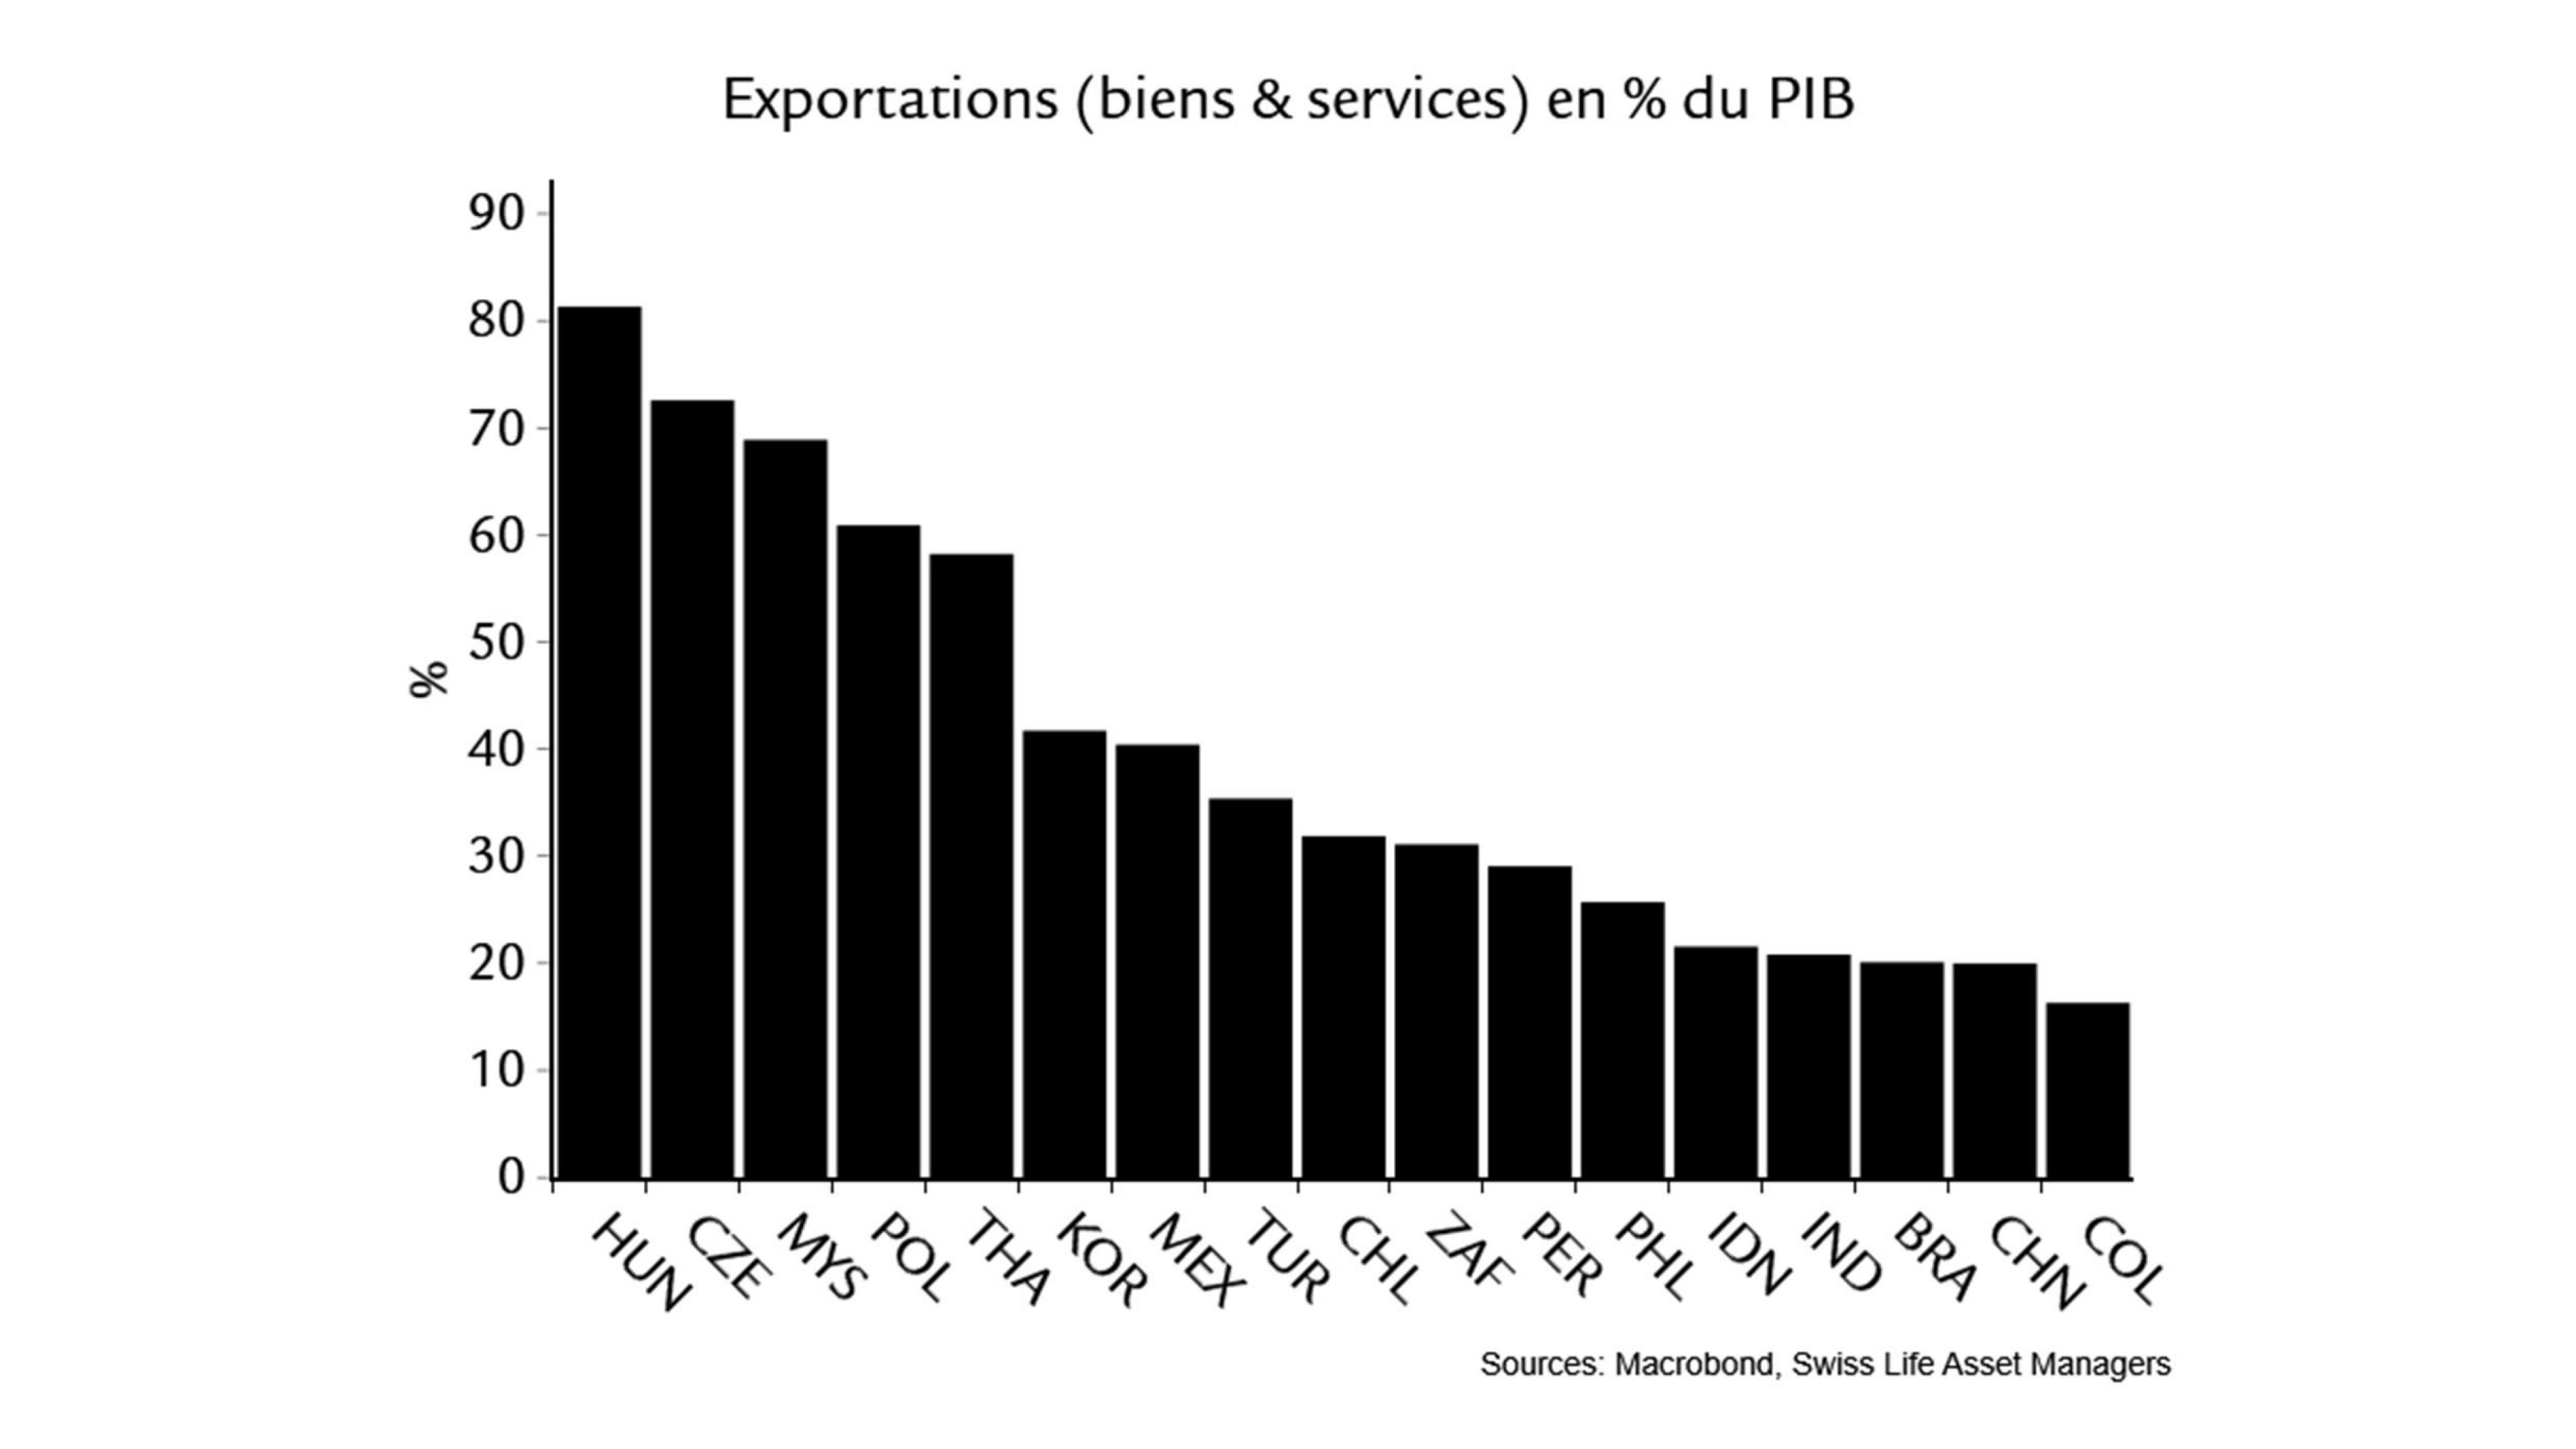 Emerging Markets Exportations (biens & services) en % du PIB